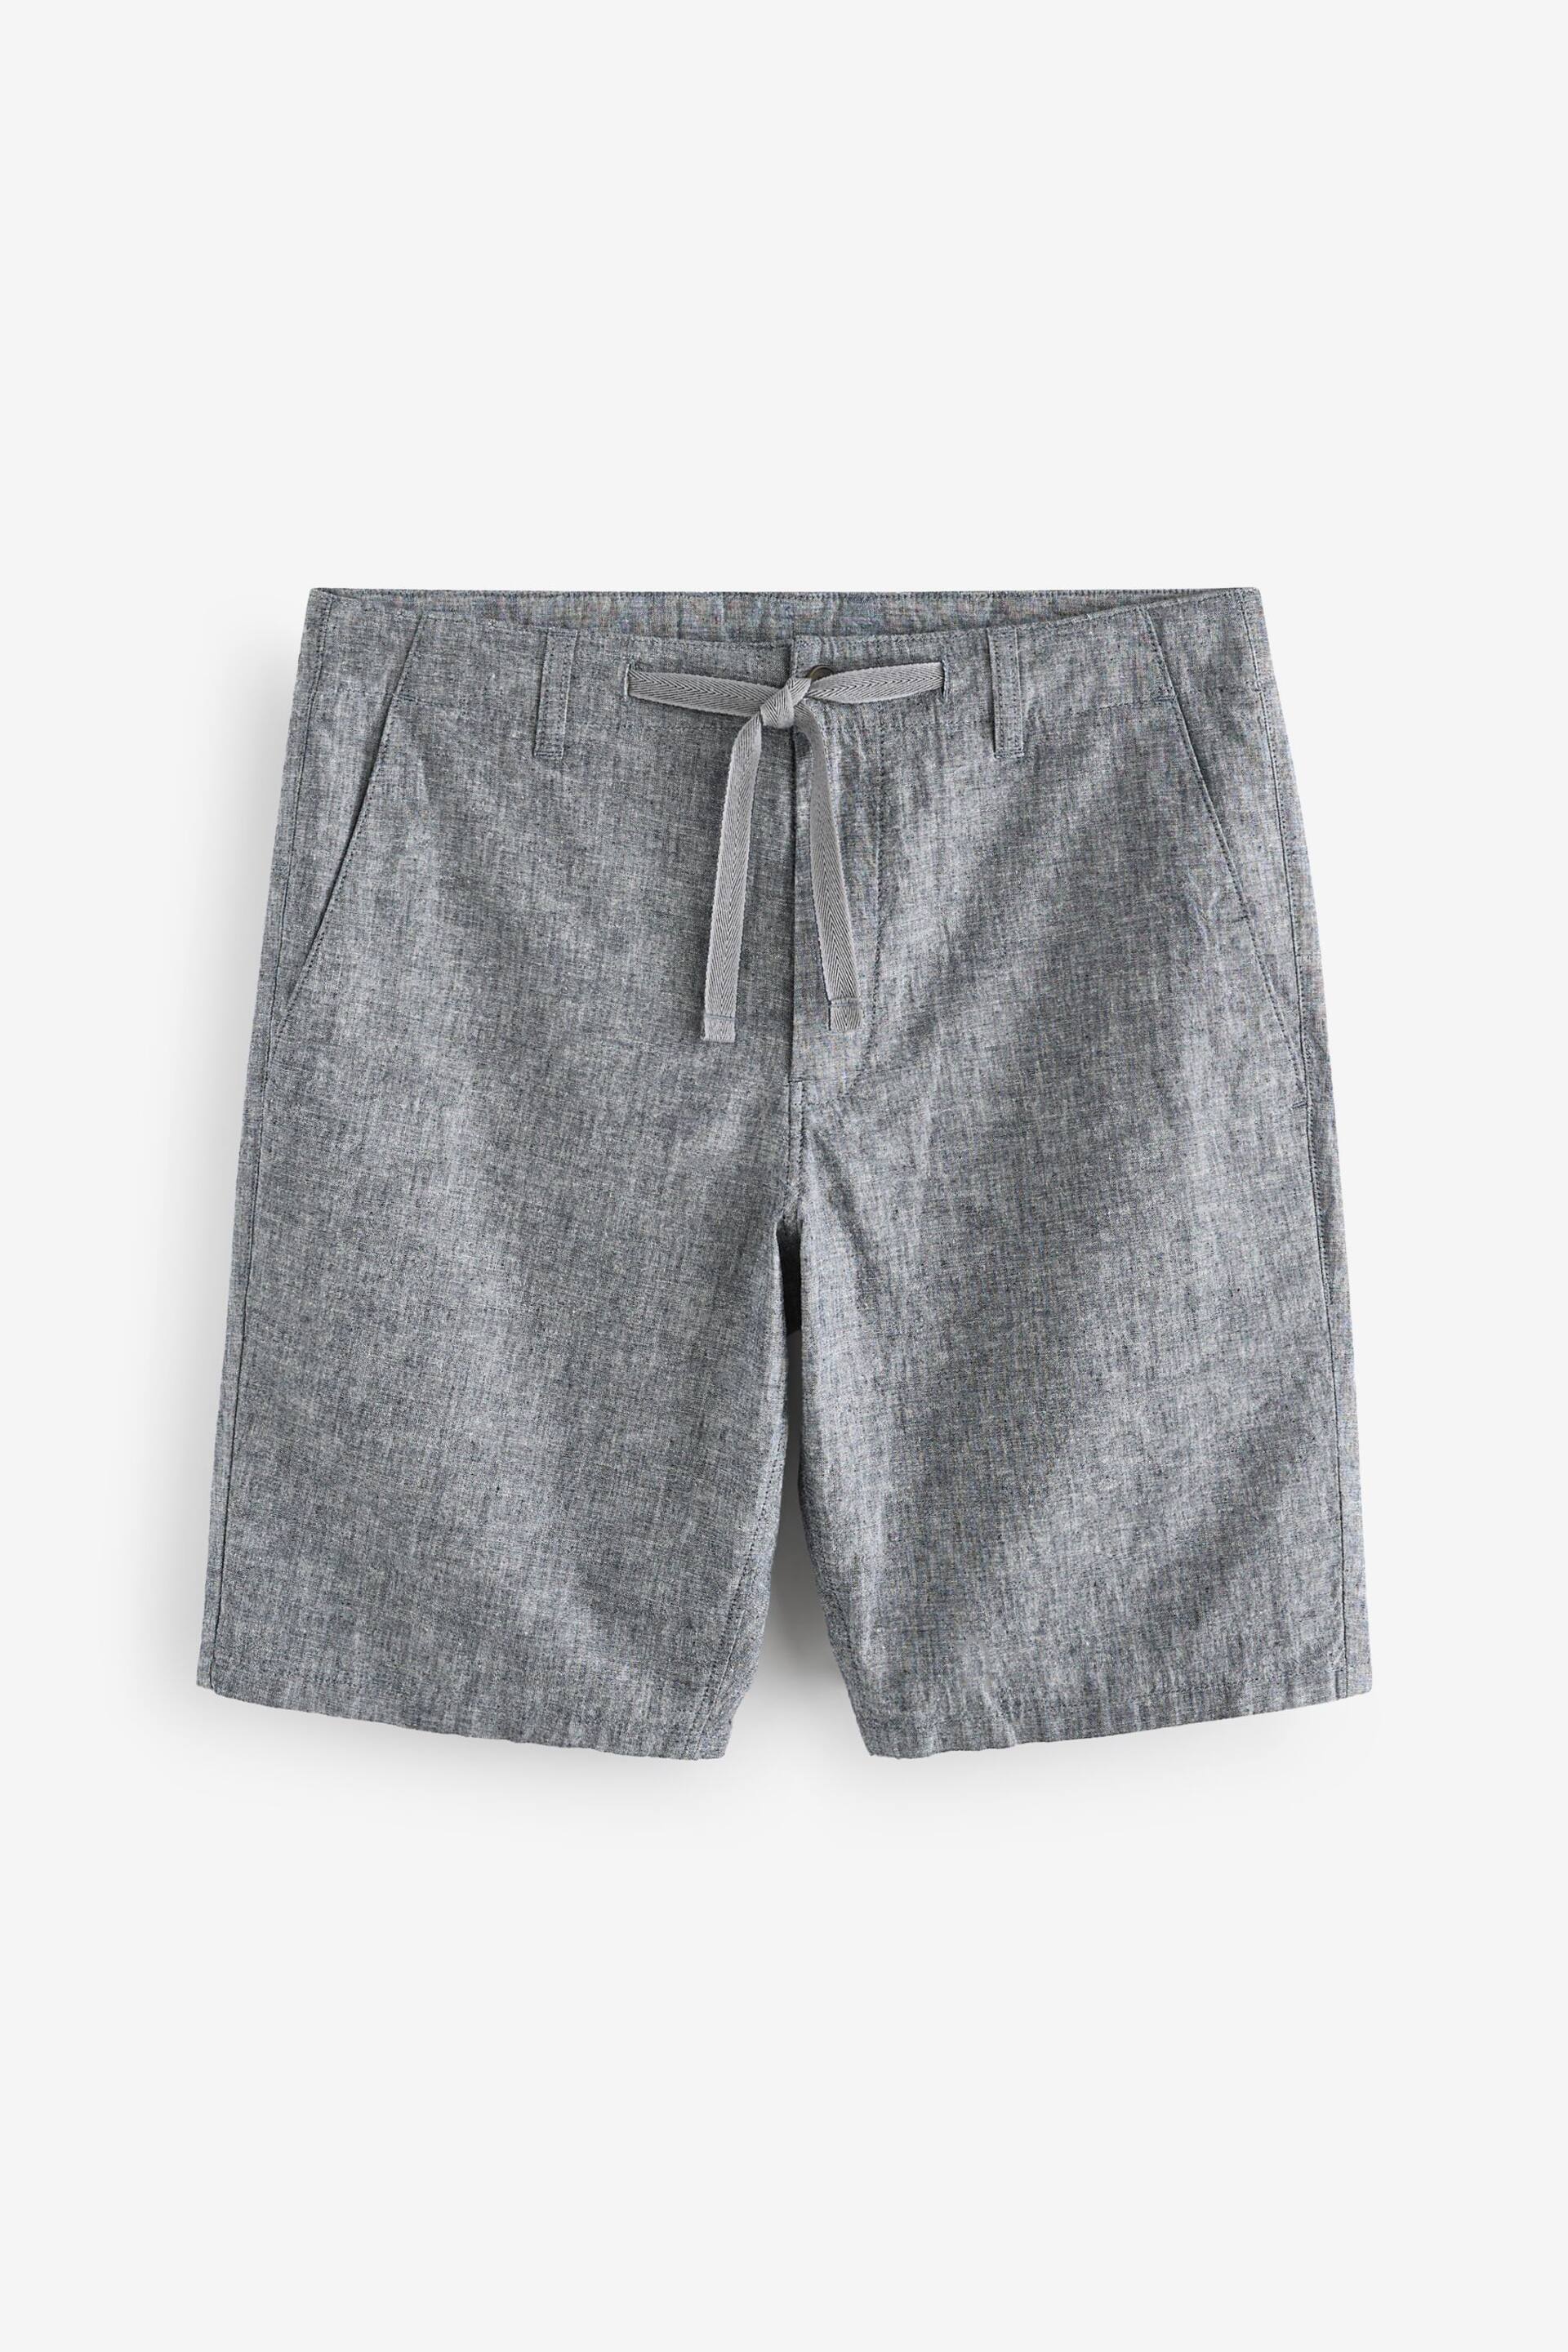 Grey Linen Viscose Shorts - Image 5 of 9